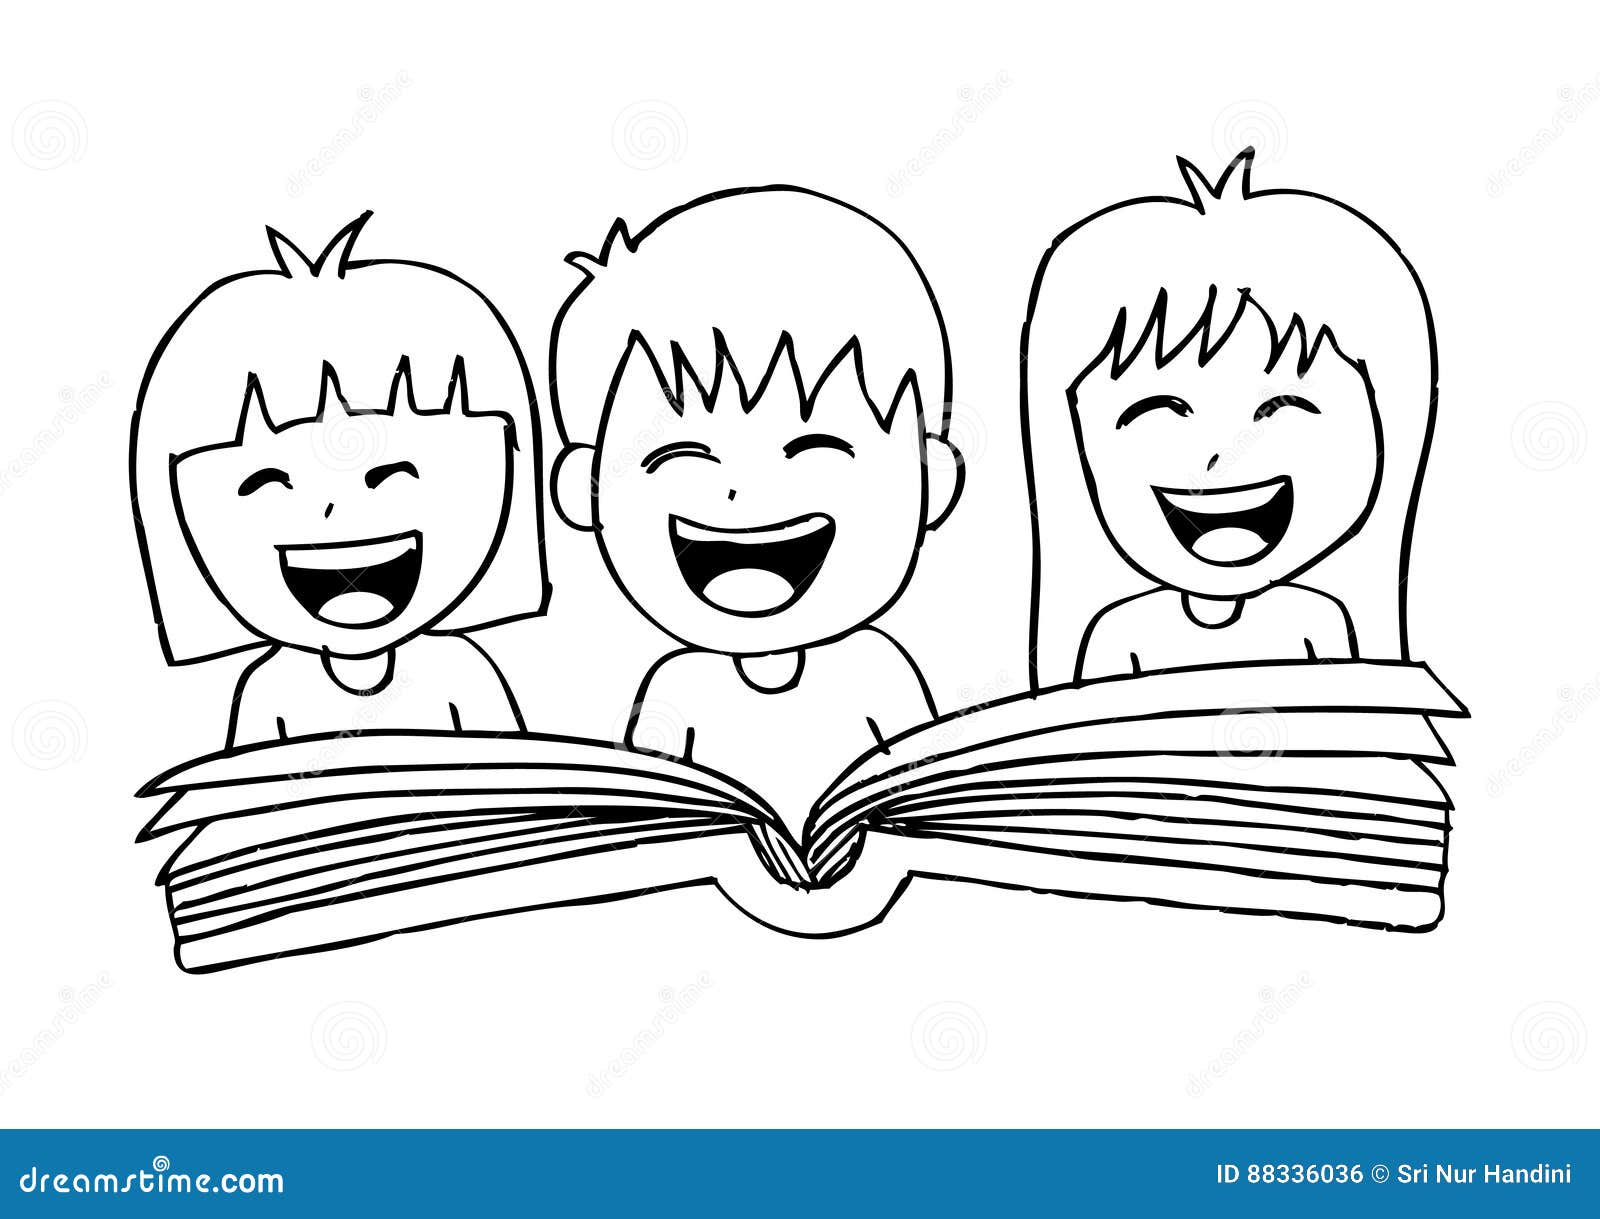 Cartoon kids reading book stock vector. Illustration of handbook - 88336036